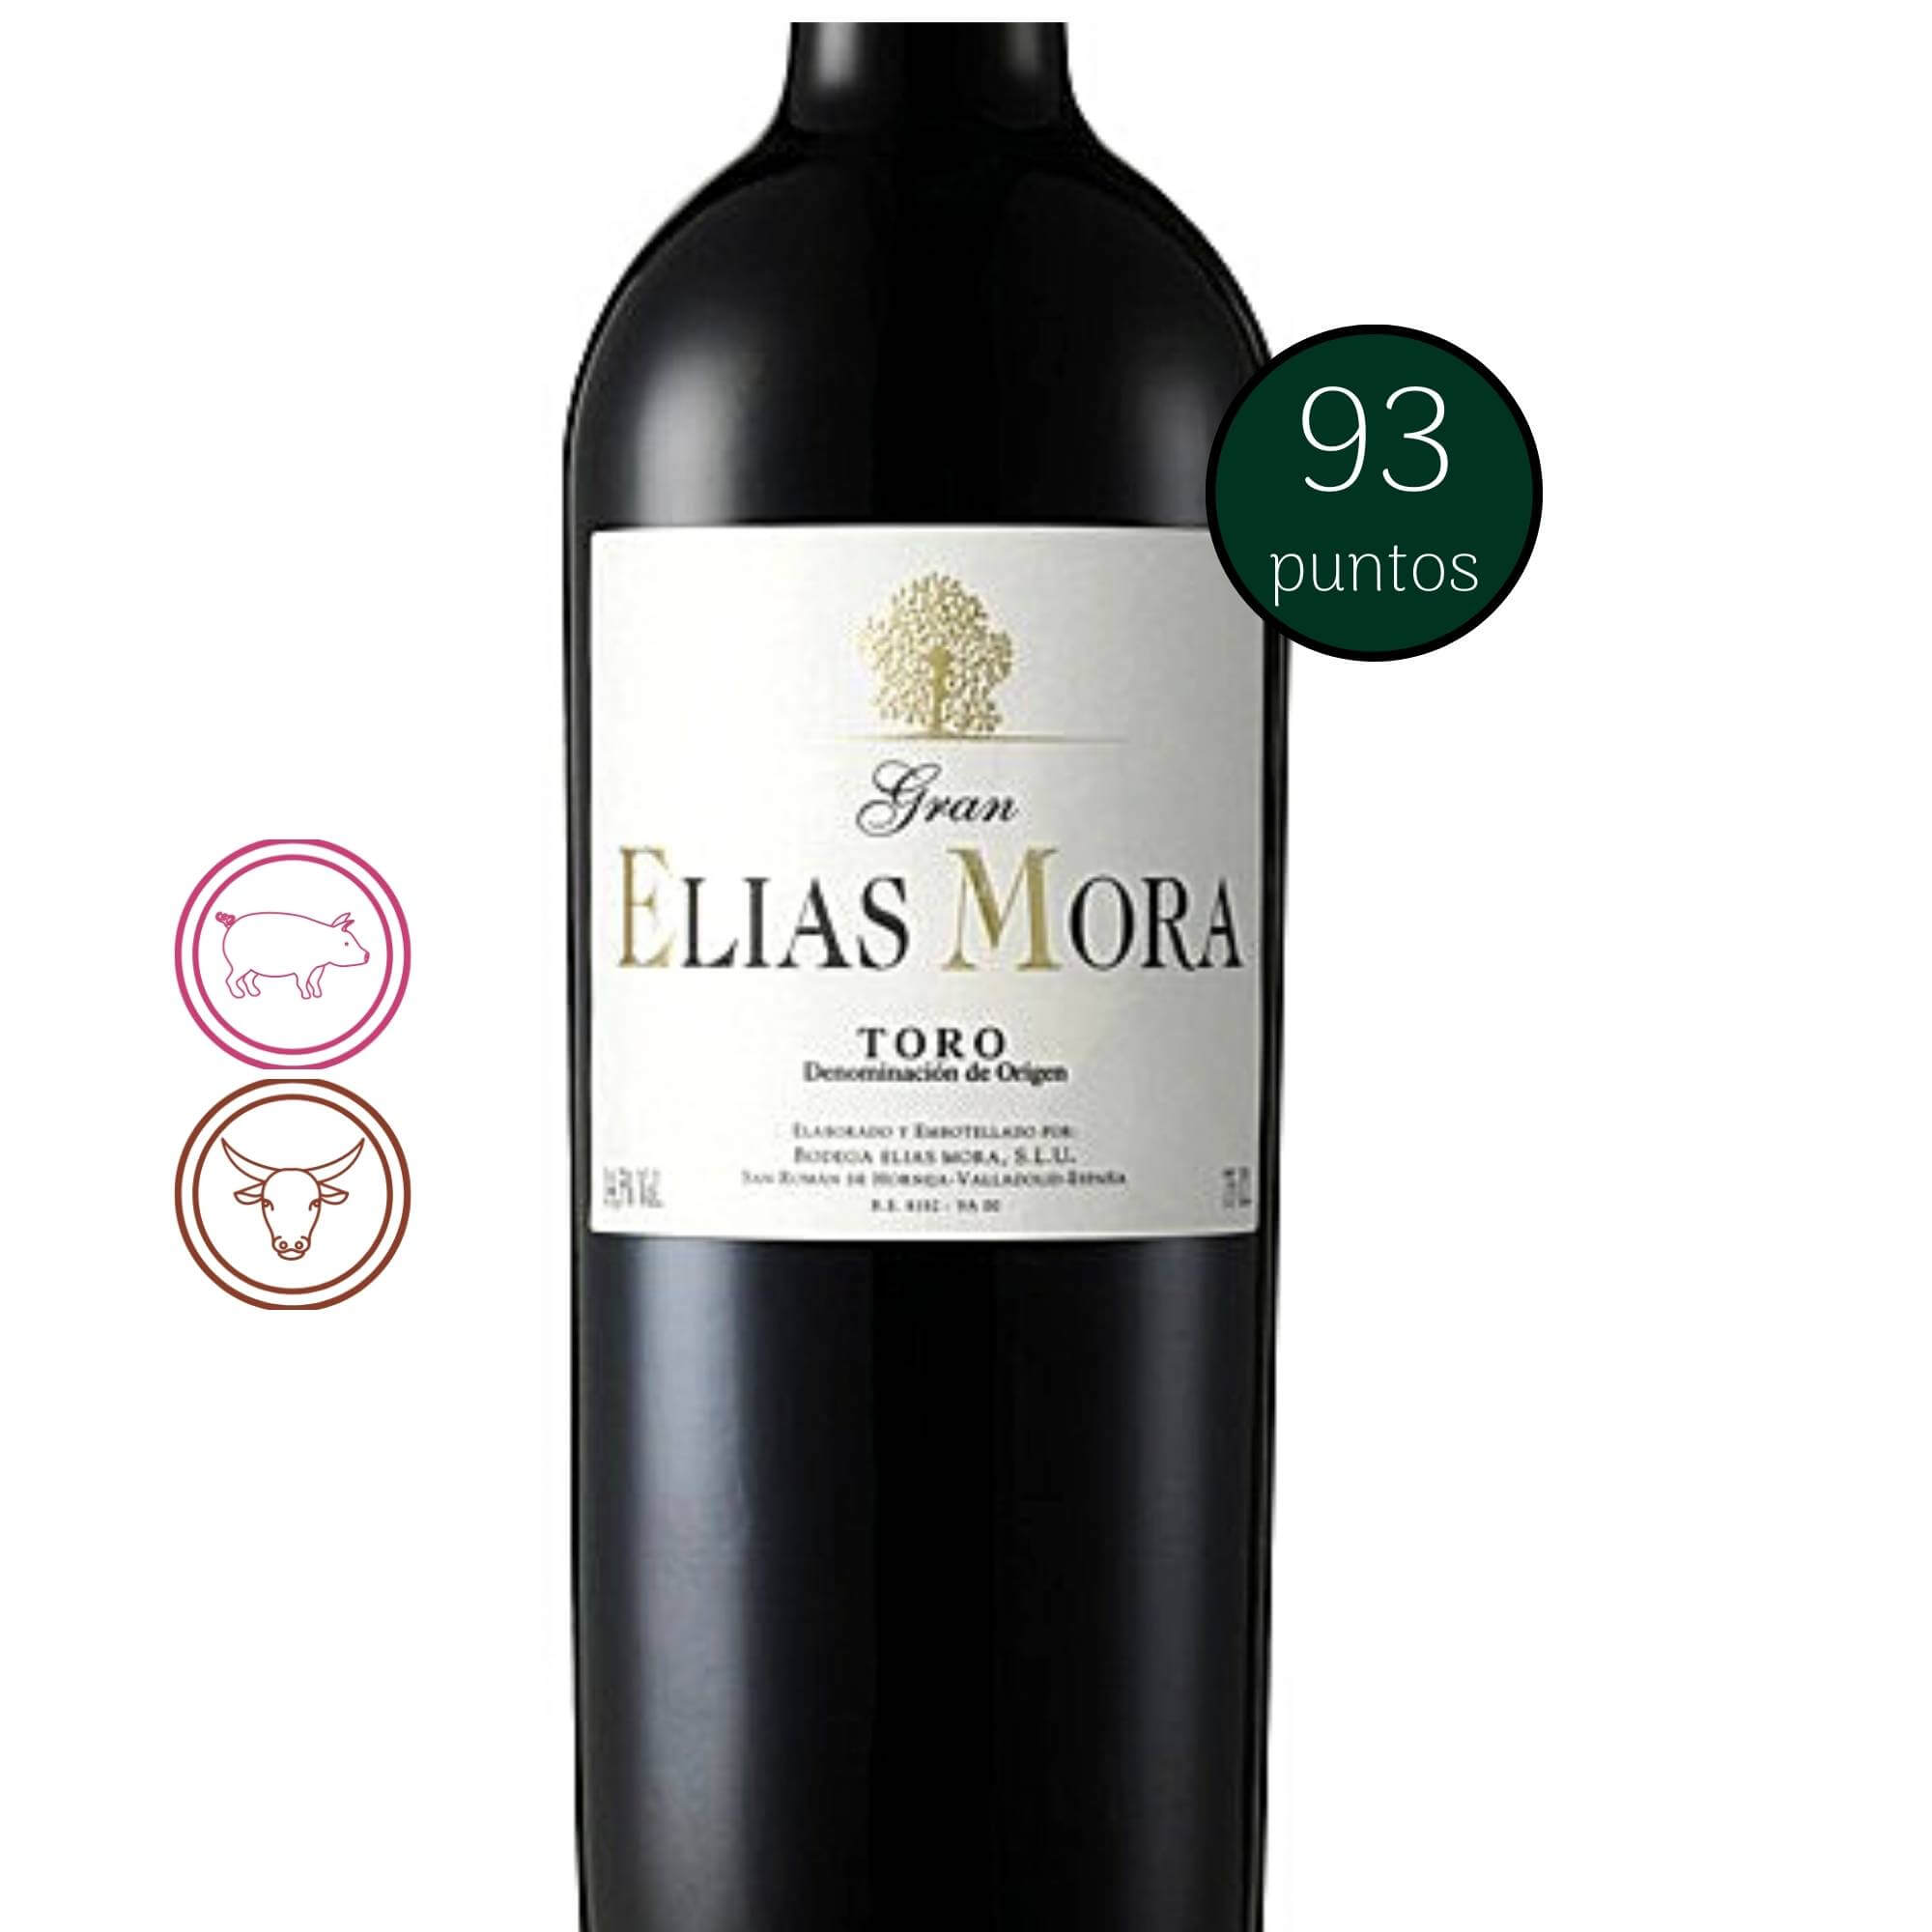 Gran Elias Mora - Toro, 2014 - Notas de Cata | Tu tienda online de Vino en Perú 